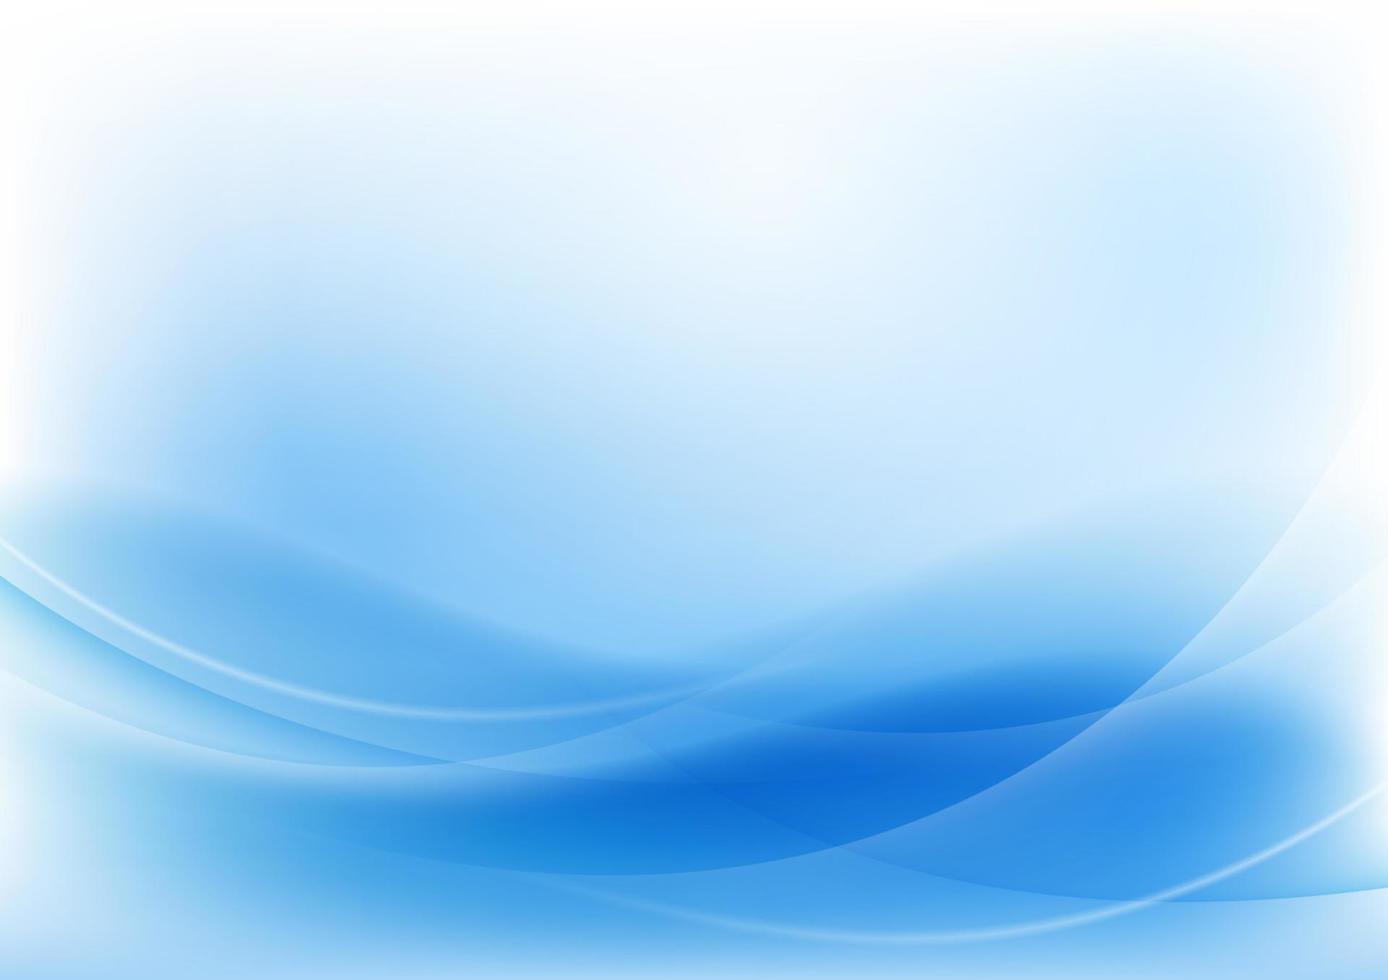 sfondo astratto onda blu. design utilizzando linee bianche e linee d'onda blu nella composizione. illustrazione vettoriale